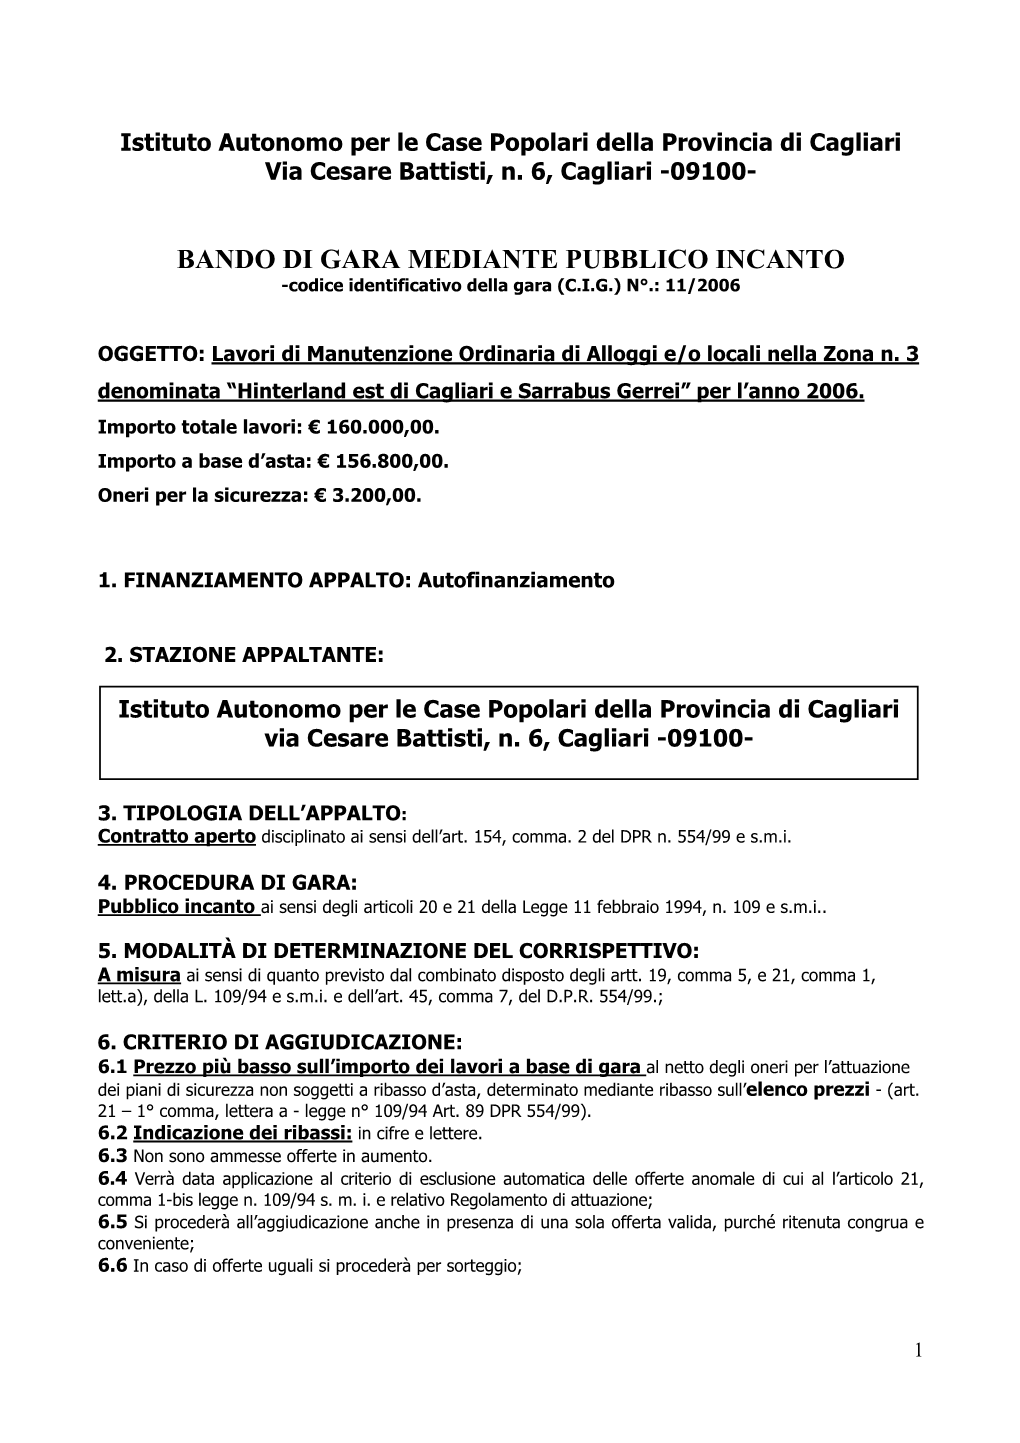 BANDO DI GARA MEDIANTE PUBBLICO INCANTO -Codice Identificativo Della Gara (C.I.G.) N°.: 11/2006